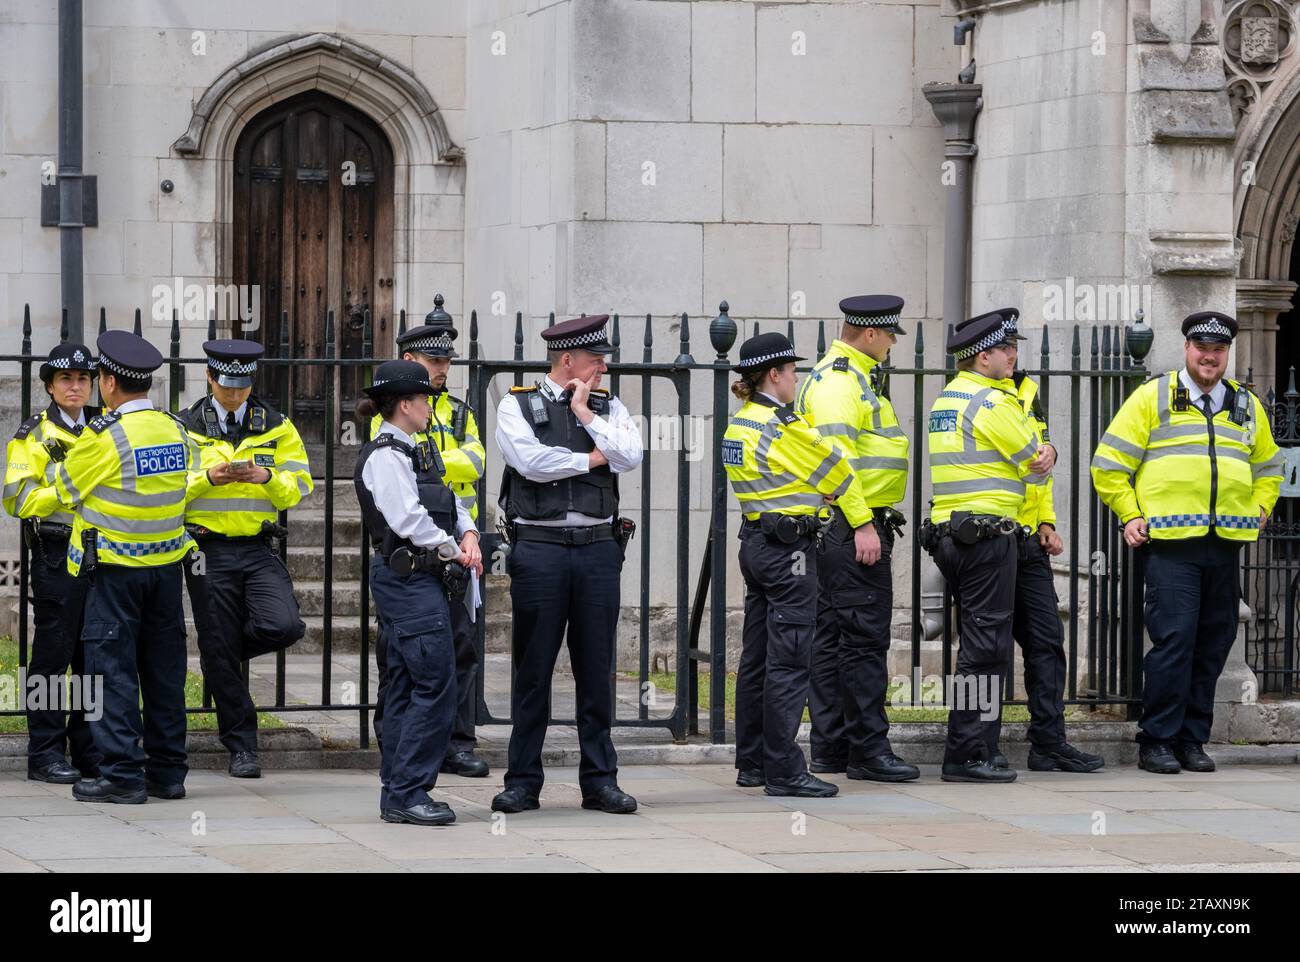 Agenti della polizia metropolitana in stand-by, con giacche ad alta visibilità, per accompagnare e monitorare una manifestazione di protesta in strada attraverso il centro di Londra Foto Stock